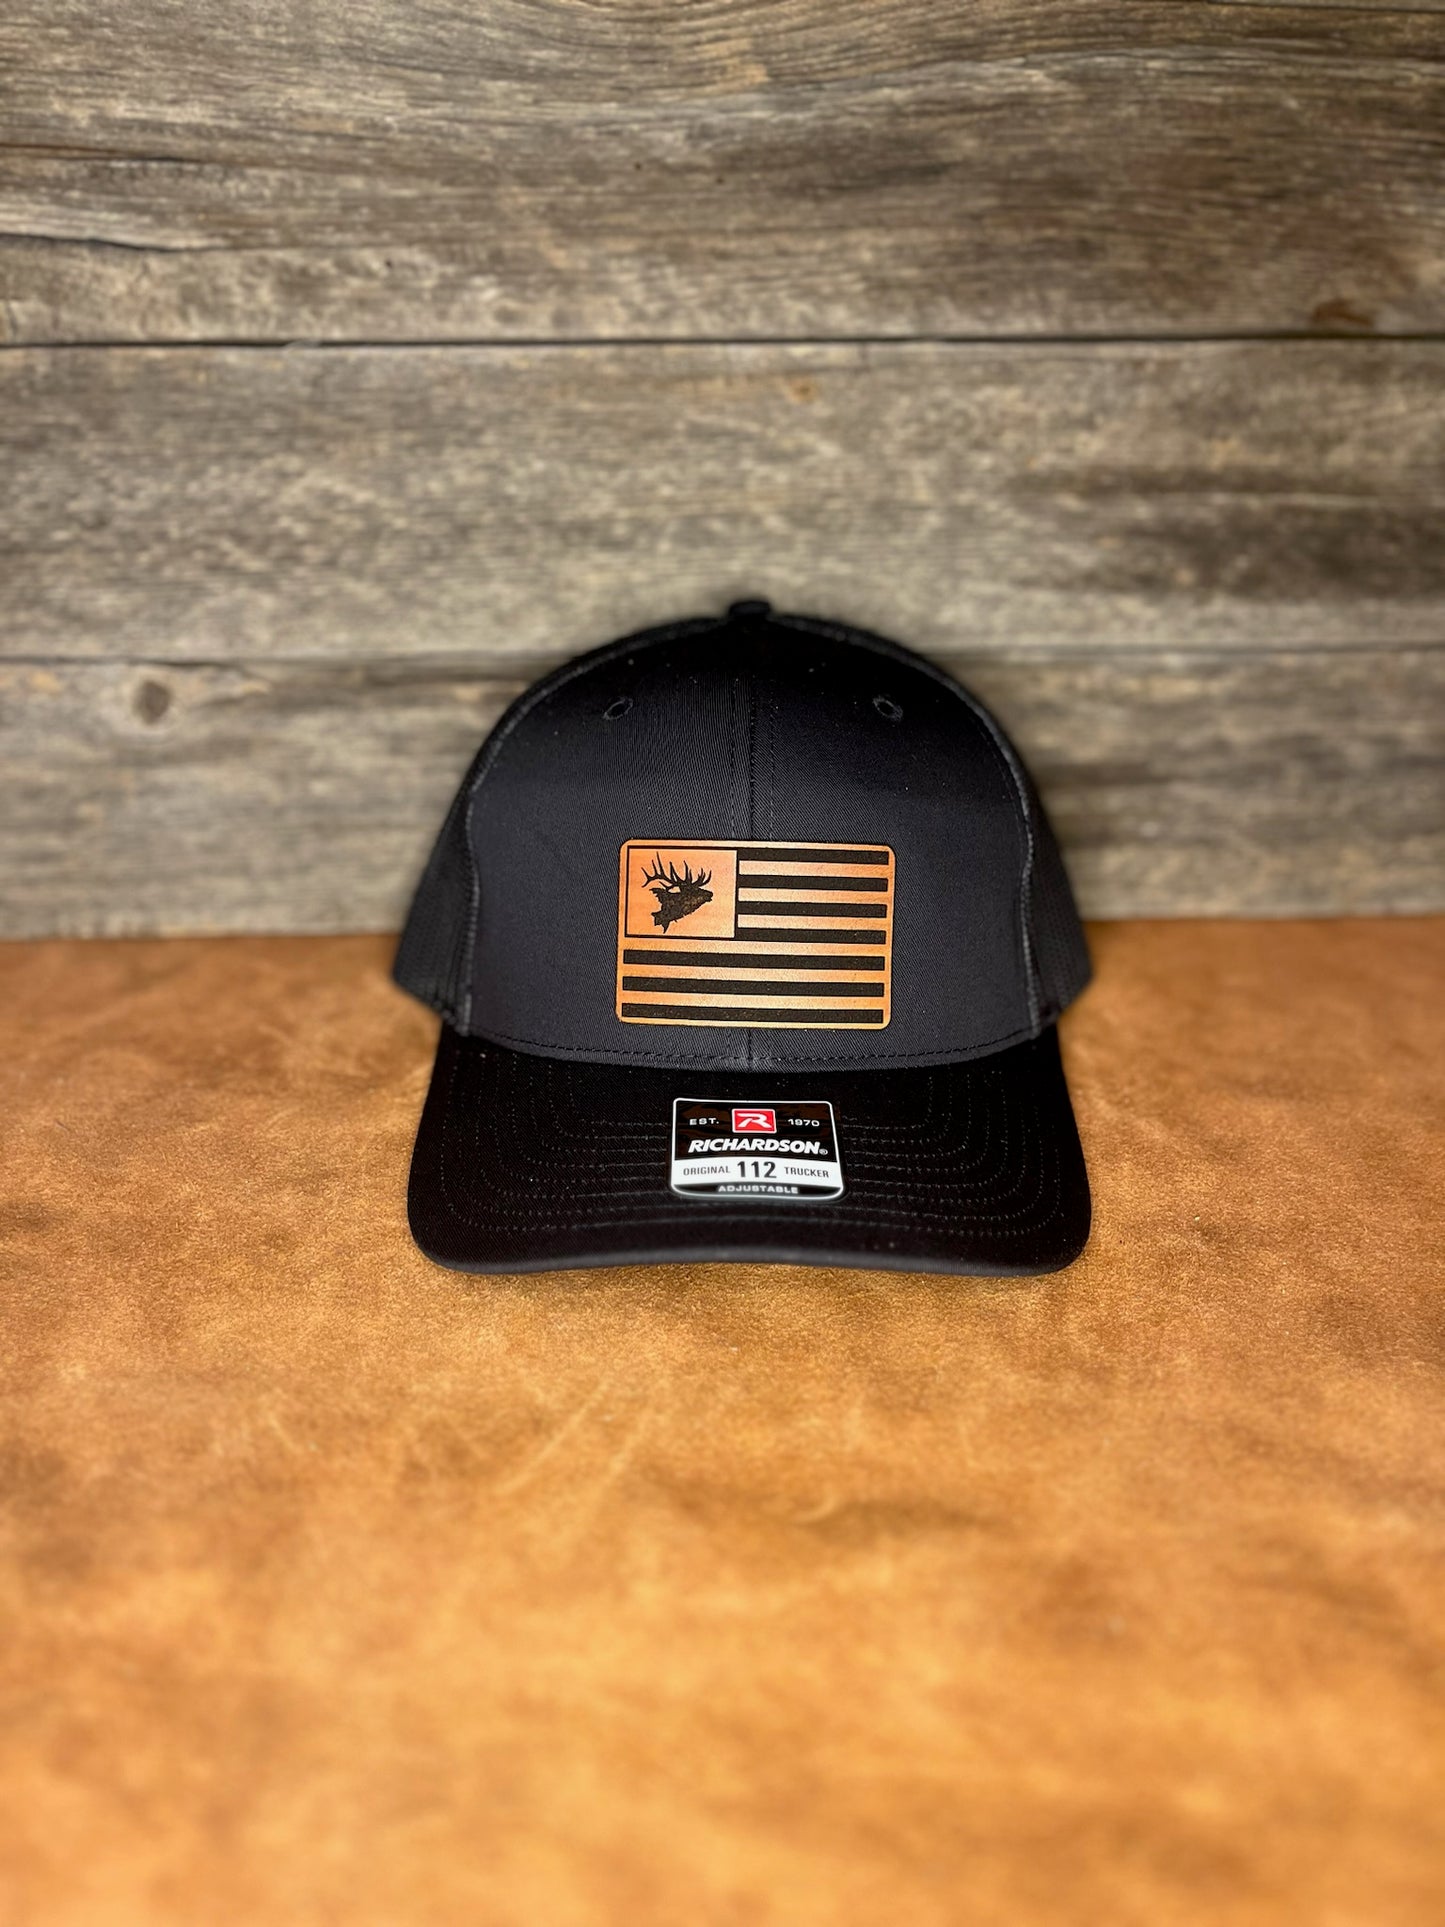 Custom Richardson American Flag Trucker Hat - Design Trucker Hats